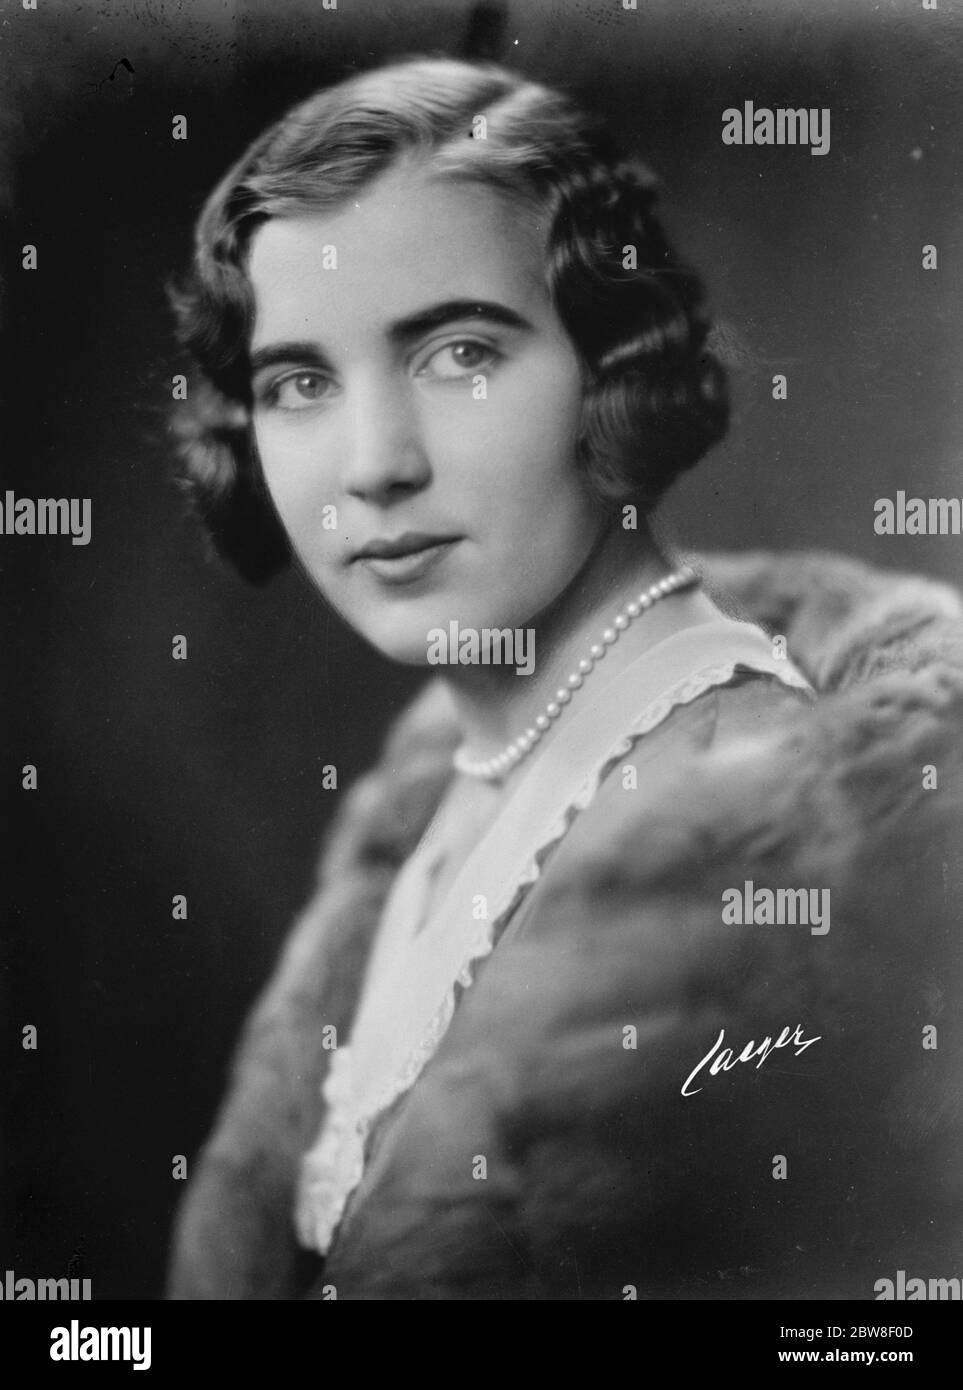 Zwanzig Jahre alt am Freitag. Ein neues und offizielles Geburtstagsporträt von Prinzessin Ingrid von Schweden, der Enkelin des Herzogs von Connaught, die am 28. März ihren Geburtstag feiert. 25 März 1930 Stockfoto